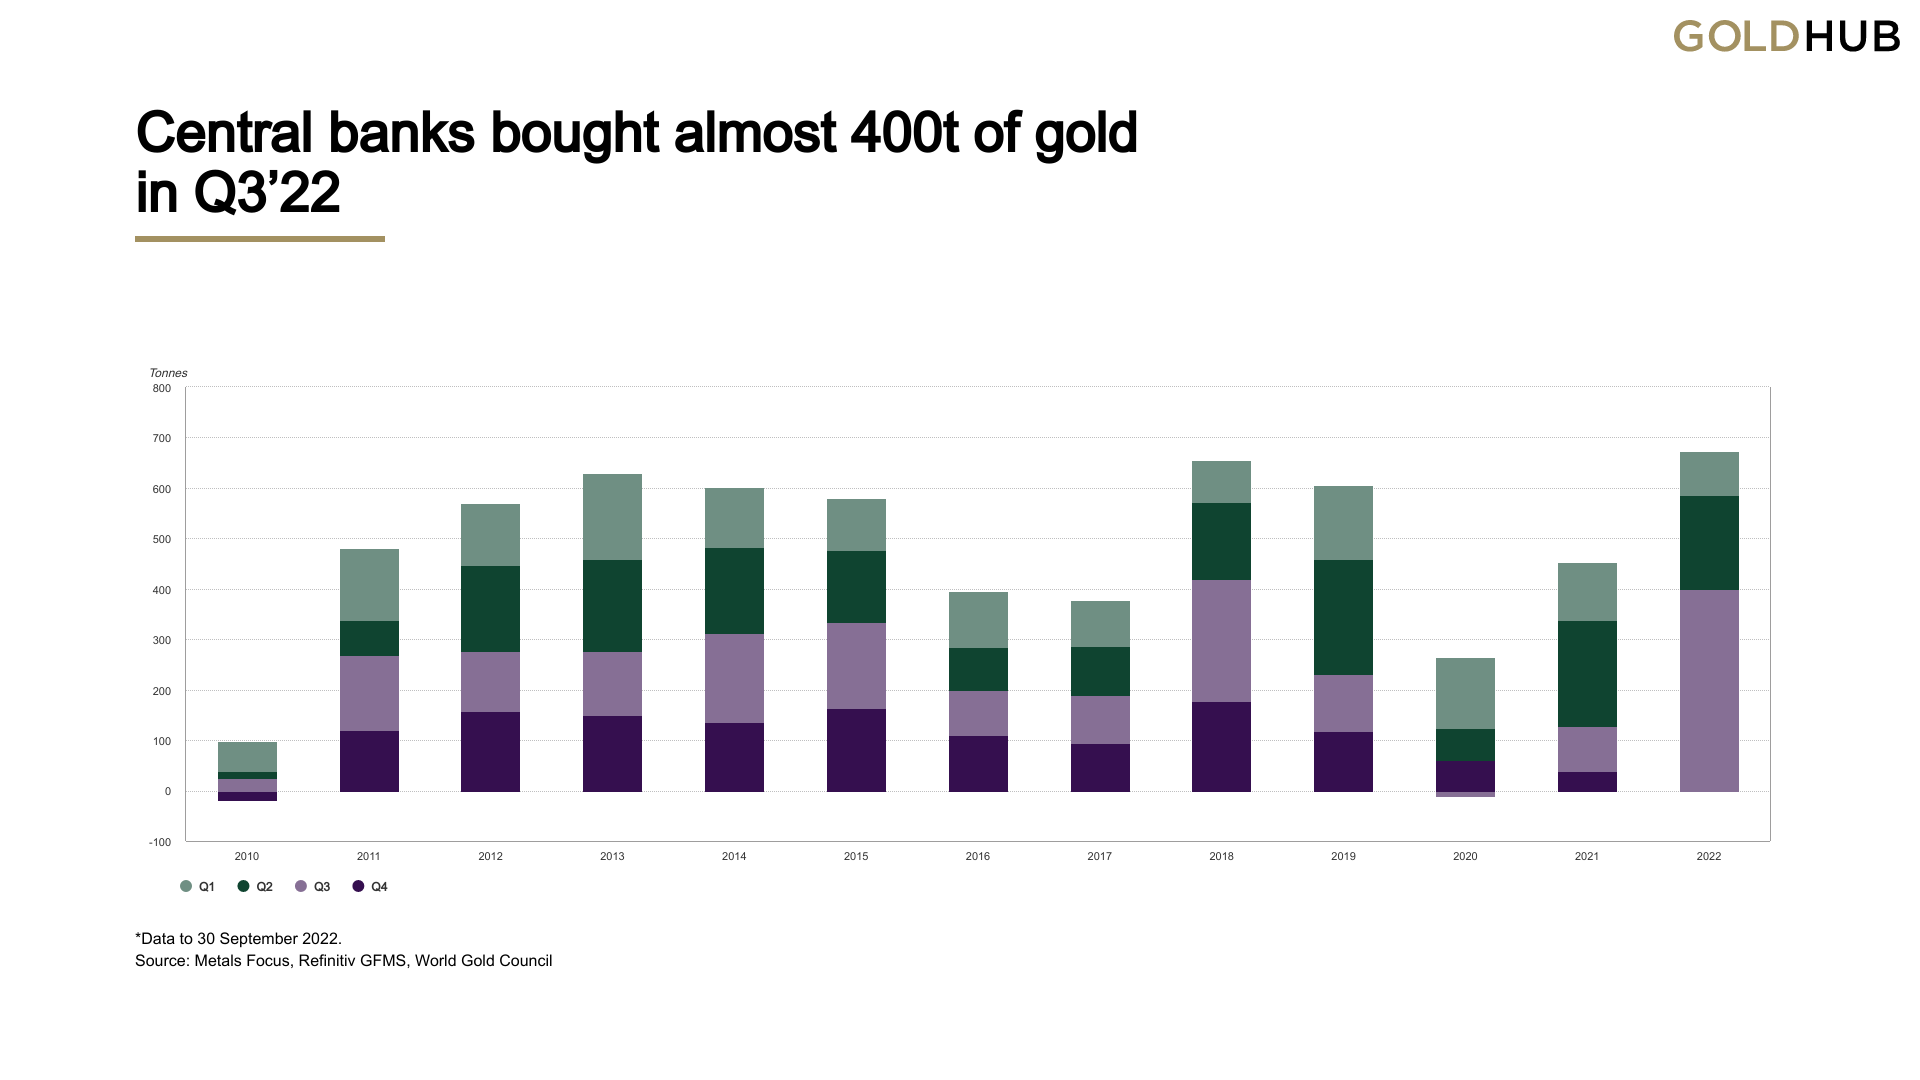 Les achats d'or des banques centrales atteignent leur plus haut niveau trimestriel au troisième trimestre, 400 tonnes achetées, c'est le plus haut niveau jamais atteint.